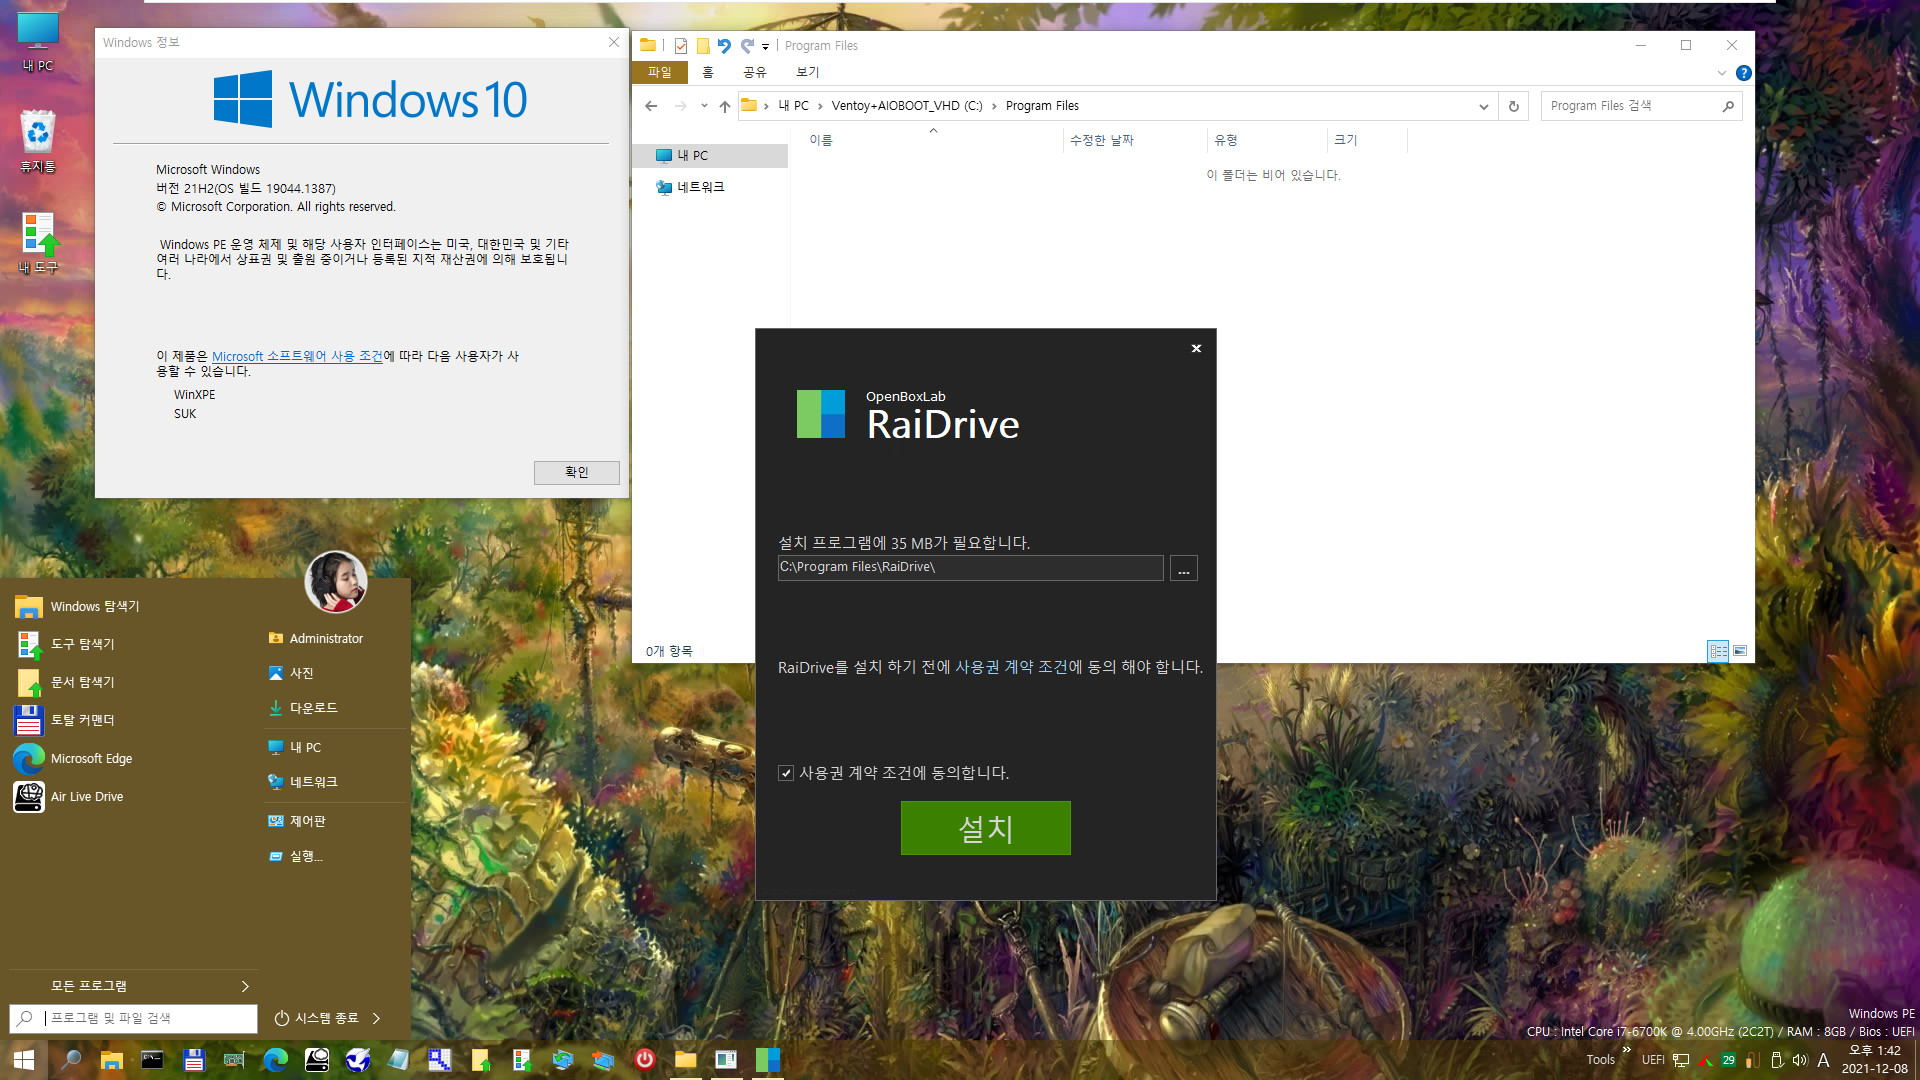 PE에서 RaiDrive 첫 설치 테스트 - WindowsXPE132 으로 Windows 10 (19044.1387) 통합본으로 PE 만들어서 테스트 - 여러번 시도하여 성공함 2021-12-08_134209.jpg